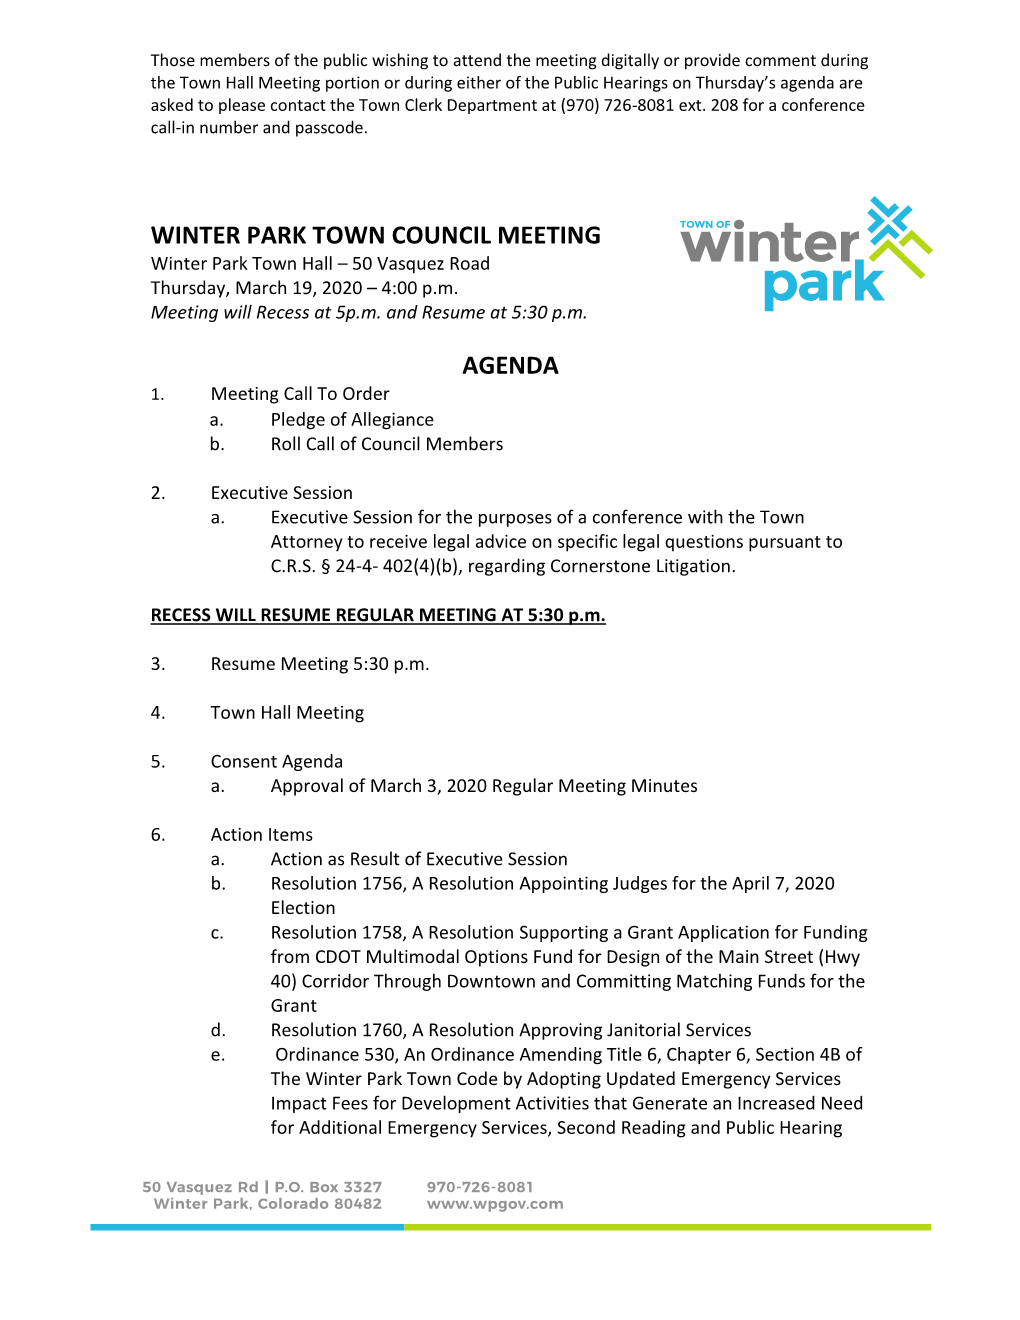 WINTER PARK TOWN COUNCIL MEETING Winter Park Town Hall – 50 Vasquez Road Thursday, March 19, 2020 – 4:00 P.M